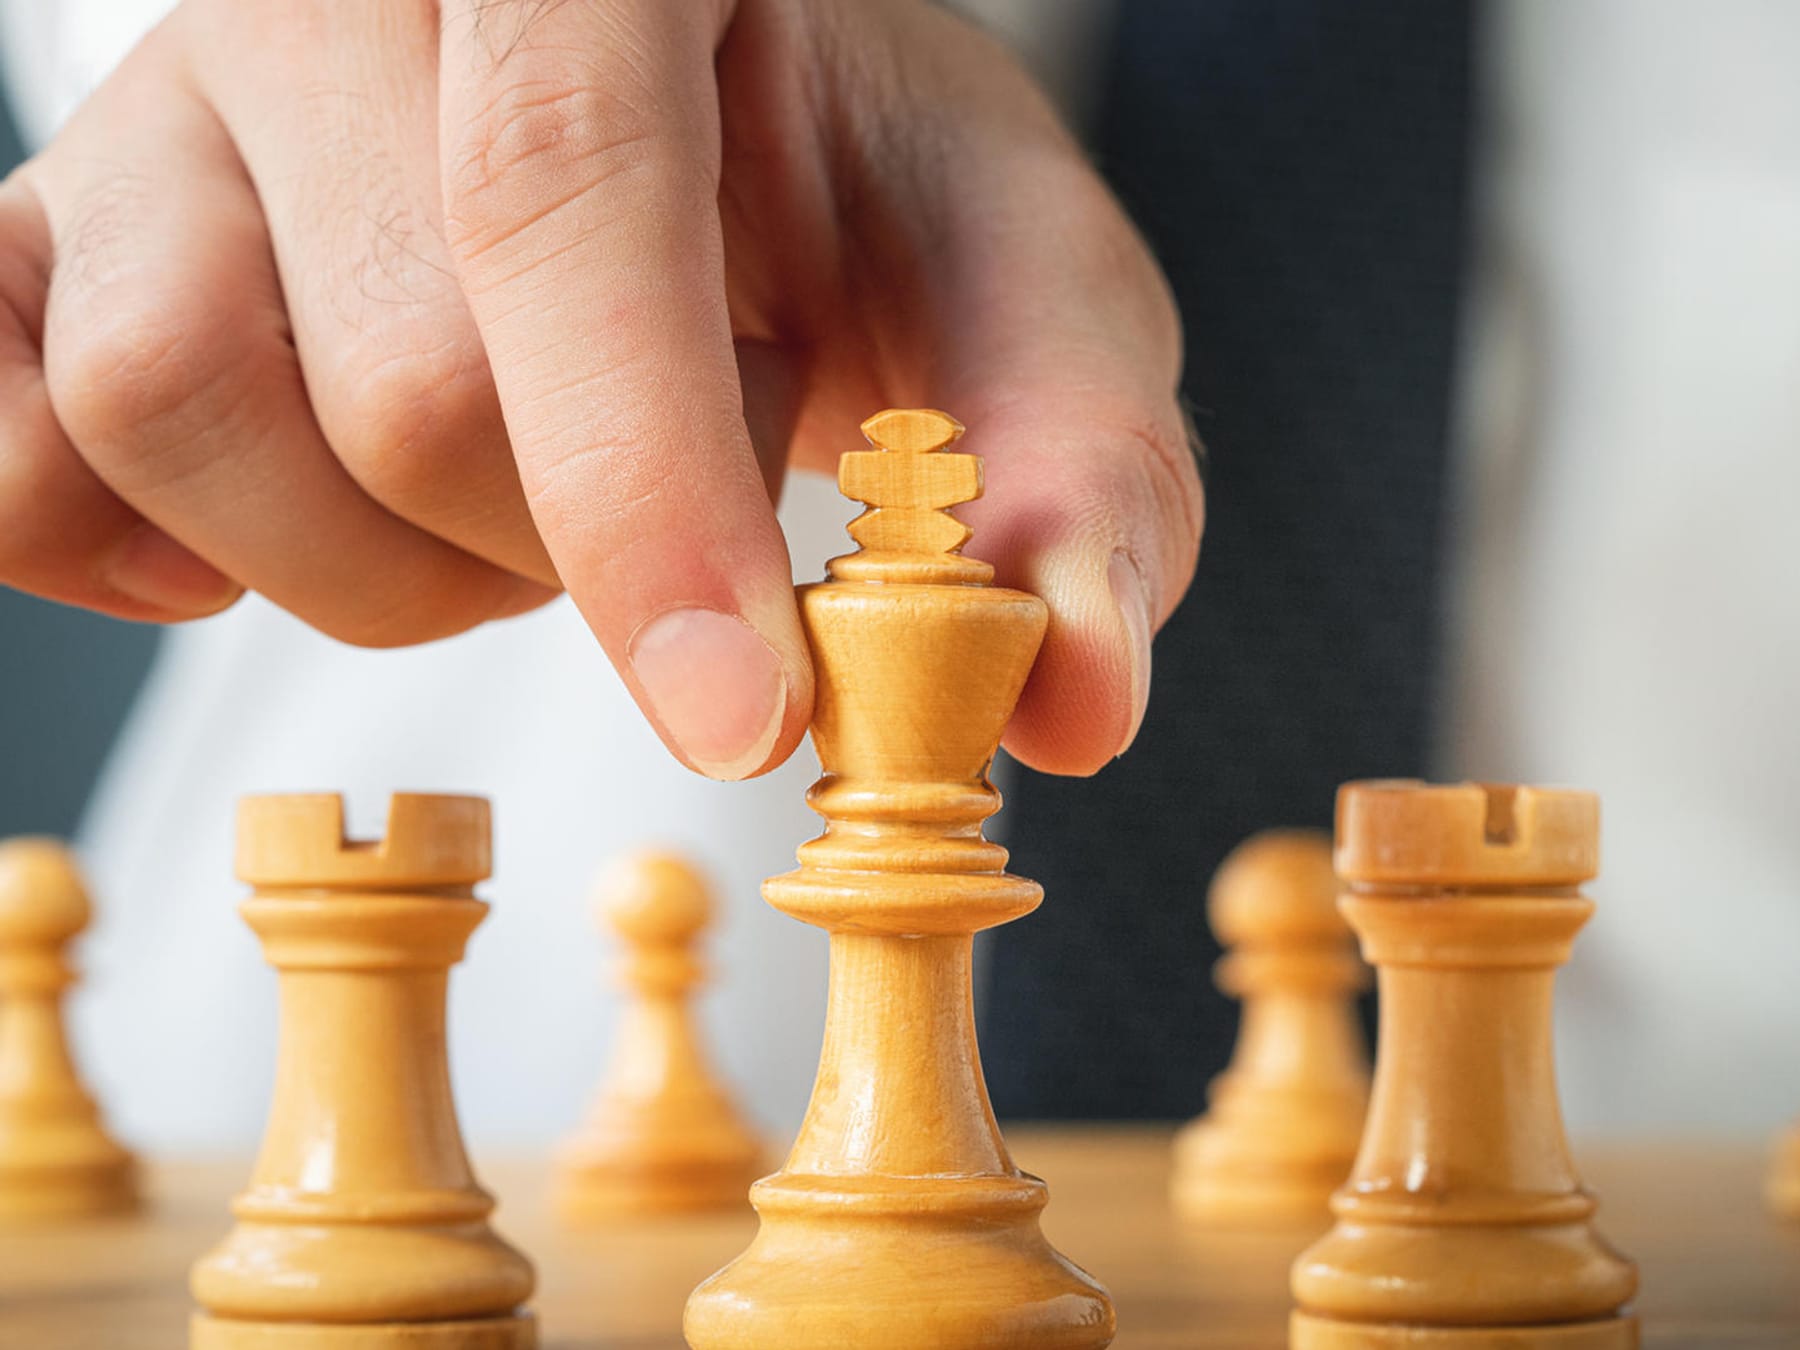 Schach für Anfänger 5 Regeln, Tipps, Strategien